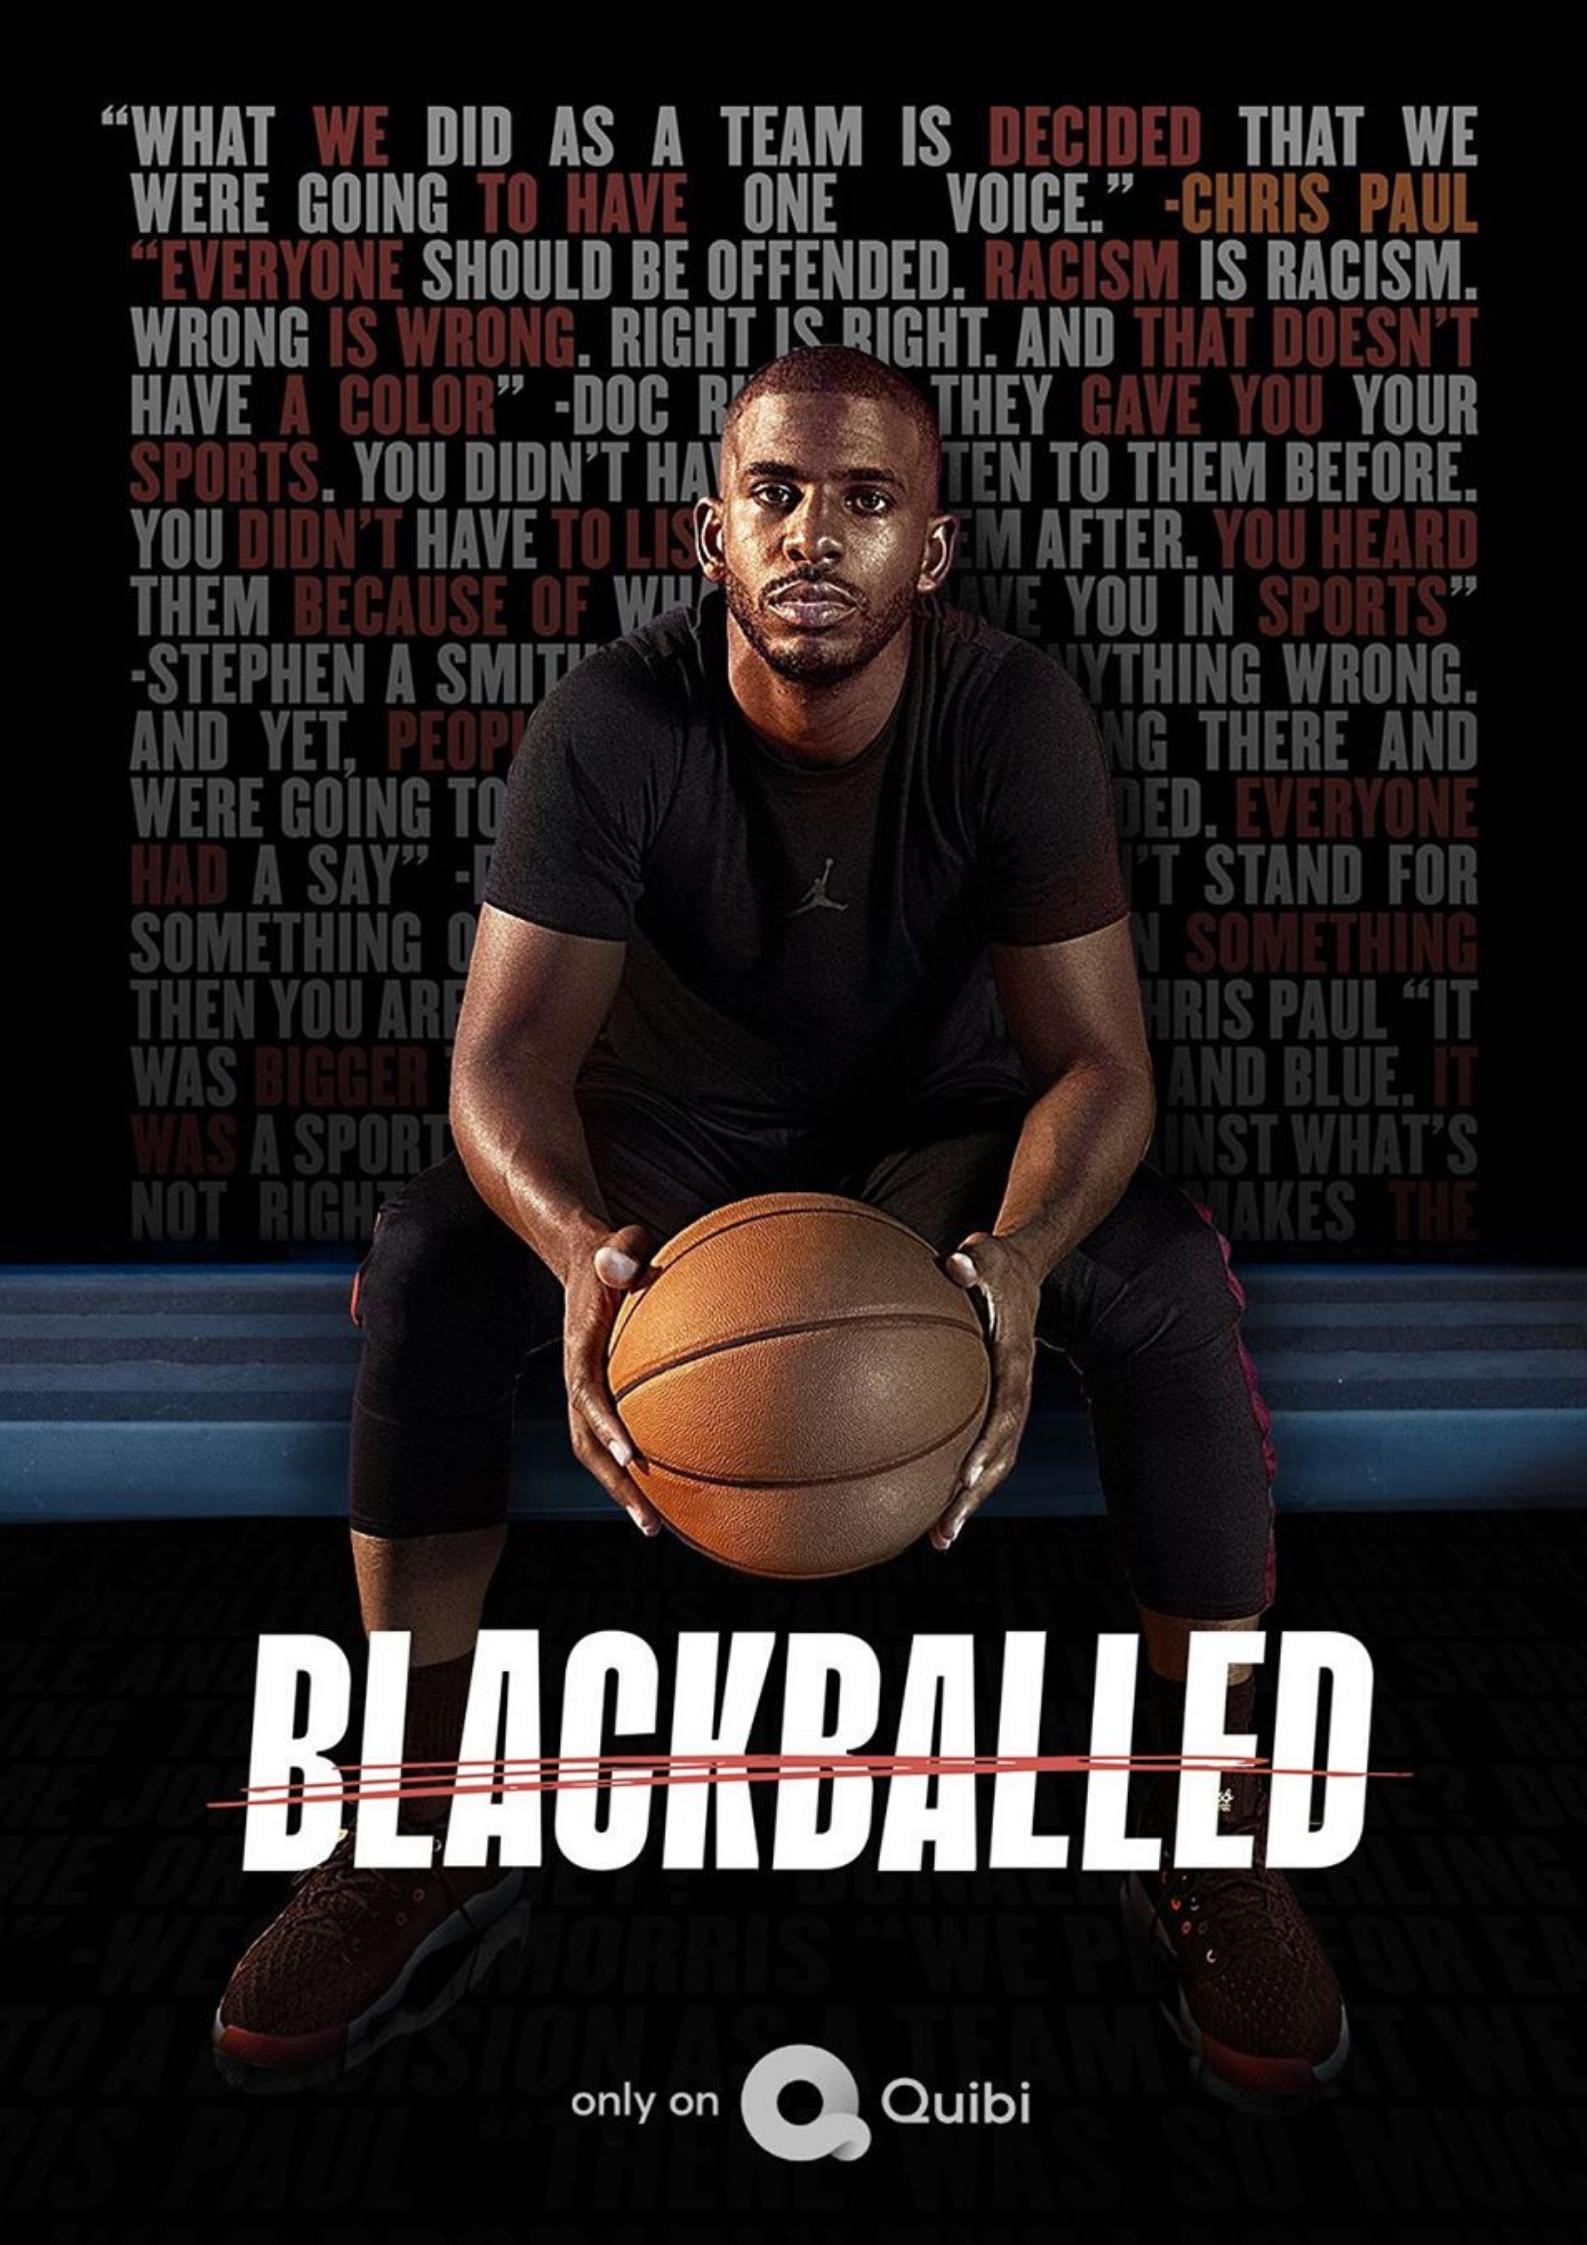 Blackballed (2020)